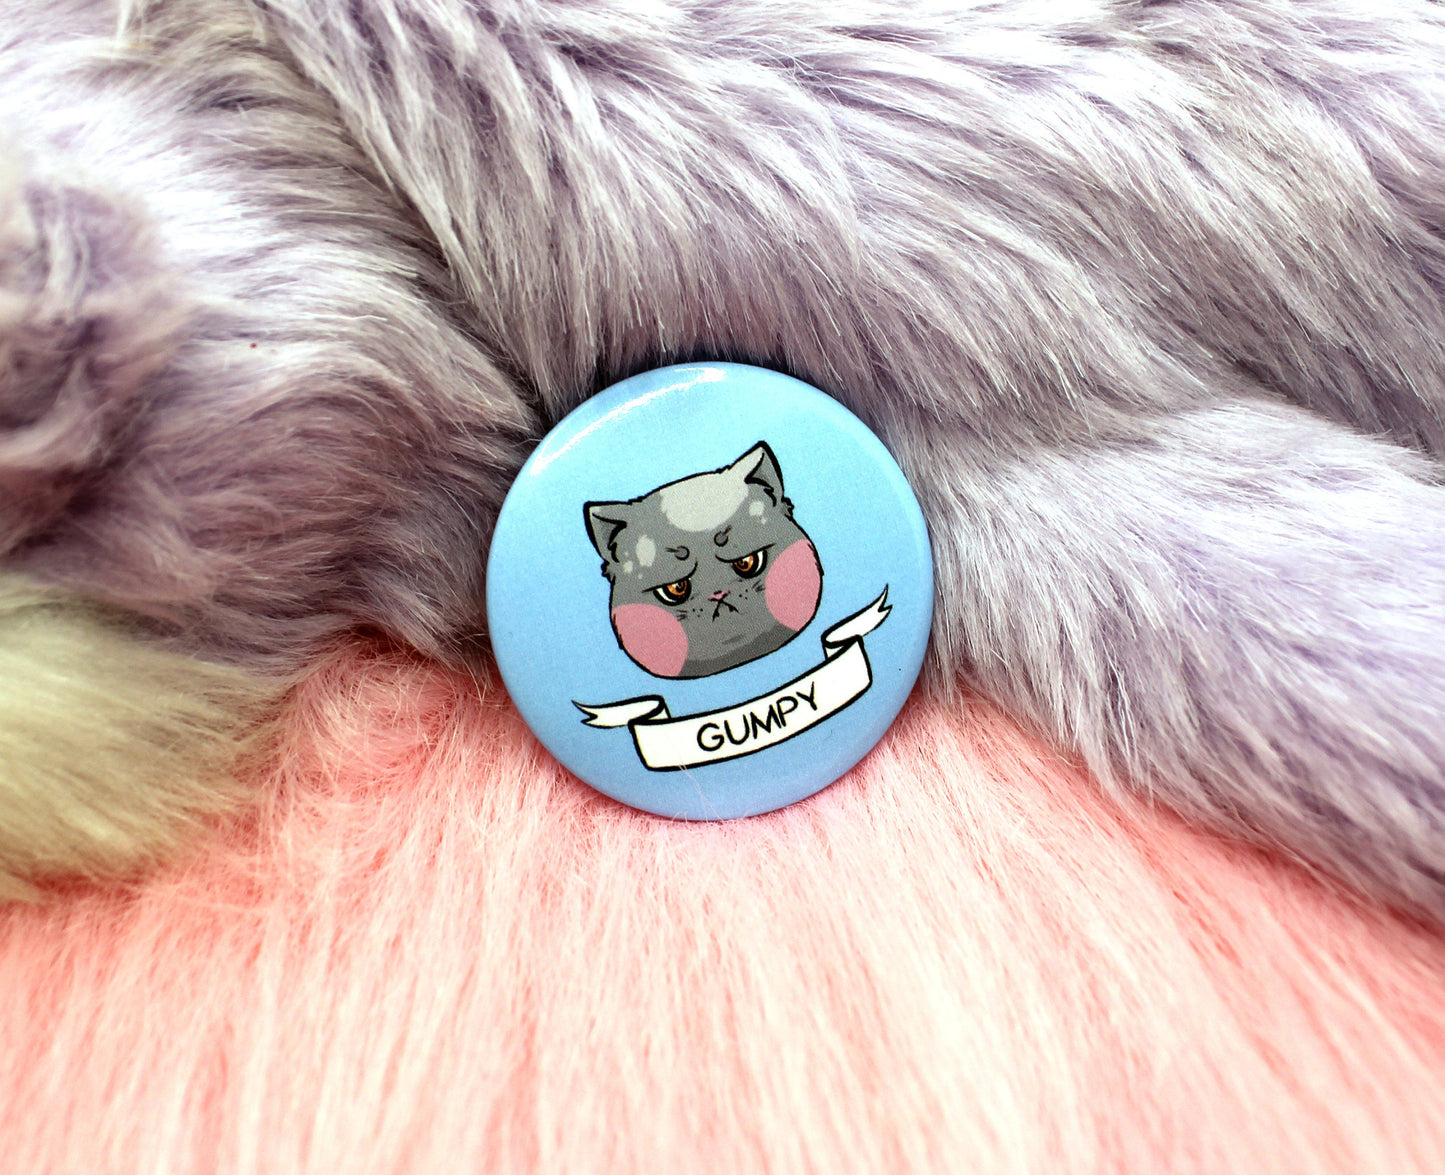 Gumpy Cat Badge (38mm)